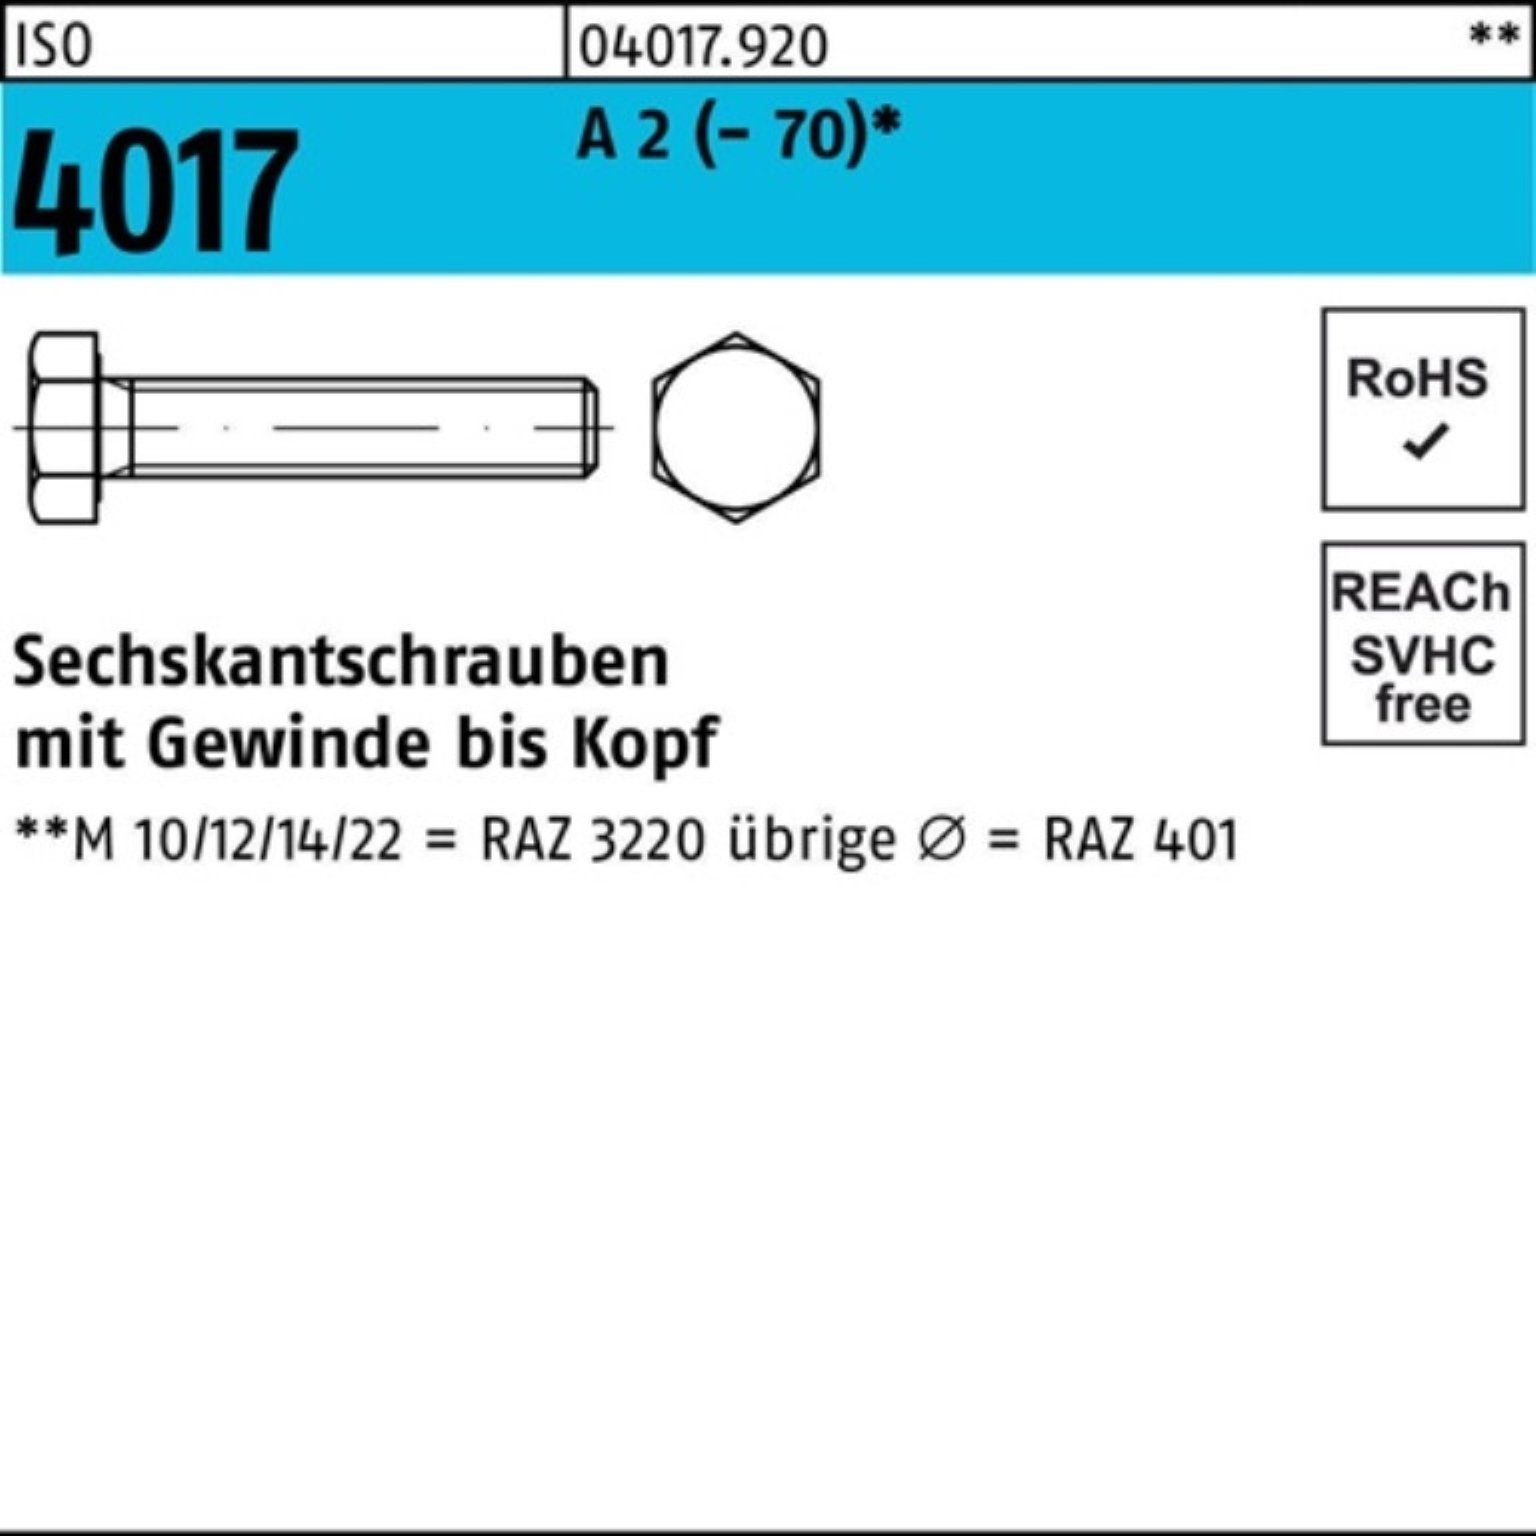 Bufab Sechskantschraube 100er Pack Sechskantschraube ISO 4017 VG M24x 200 A 2 (70) 1 Stück